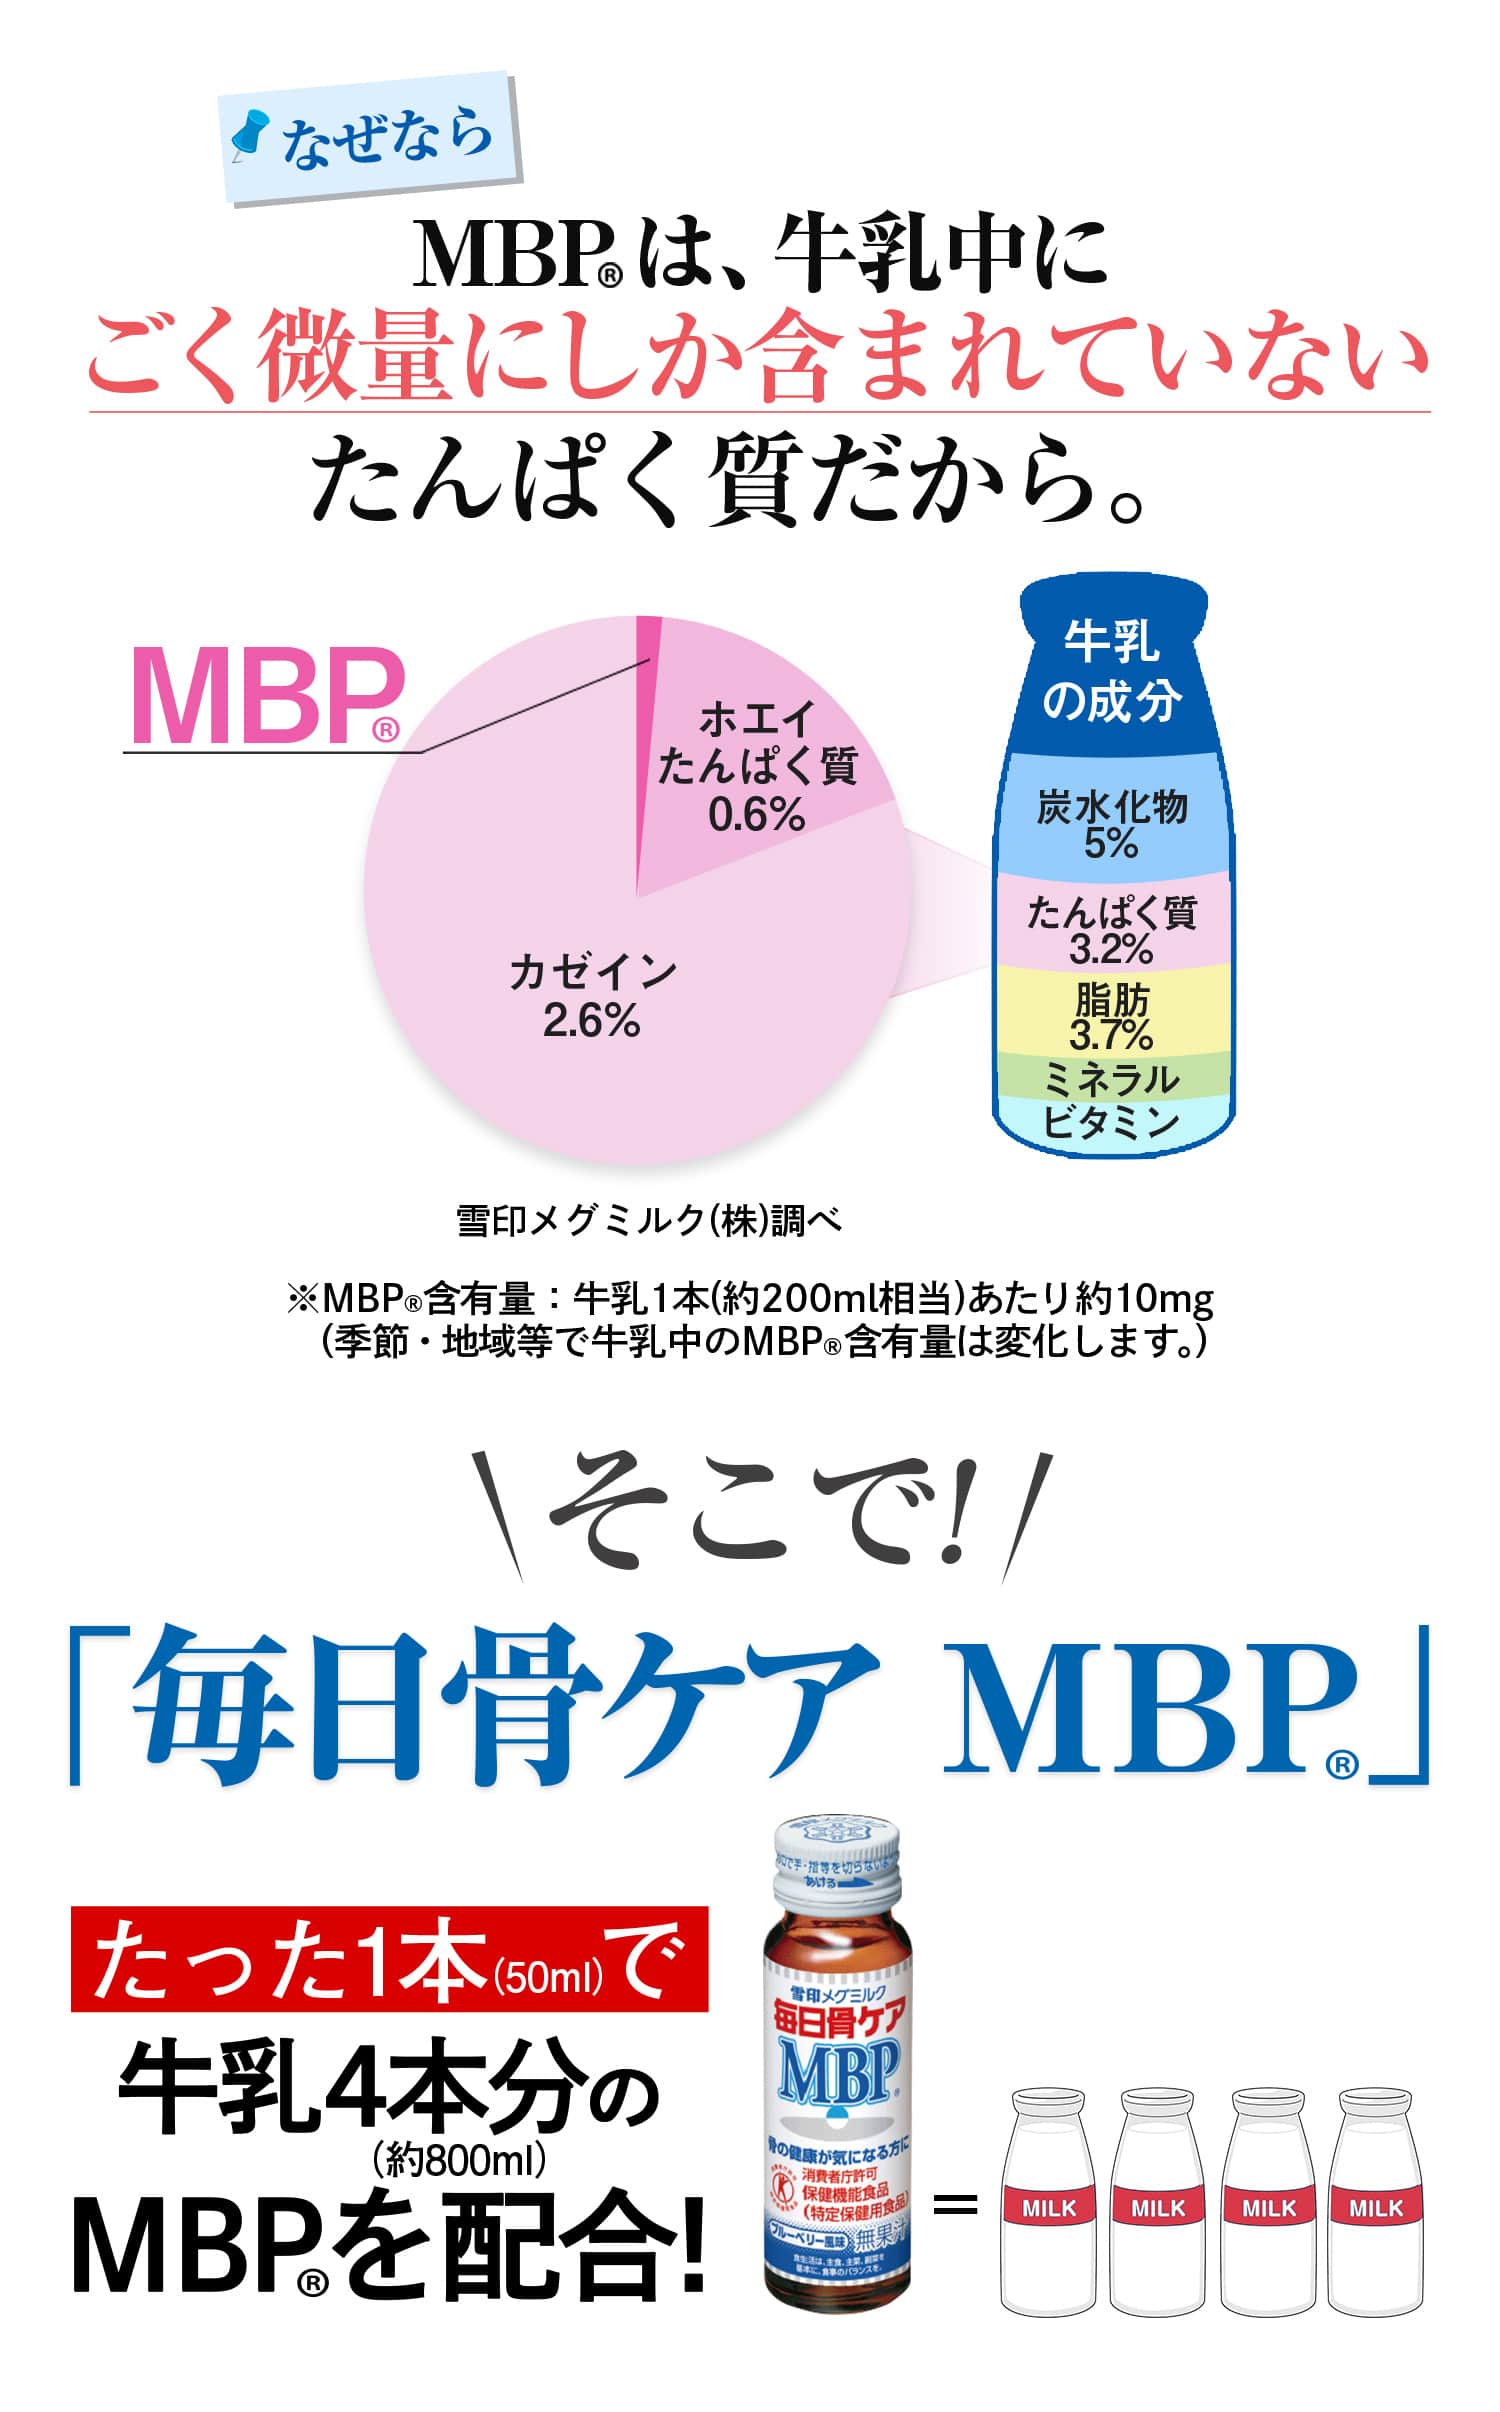 なぜならMBP(R)は、牛乳中にごく微量にしか含まれていないたんぱく質だから。そこで! 「毎日骨ケア MBP(R)」たった1本で牛乳約4本分のMBP(R)を配合!